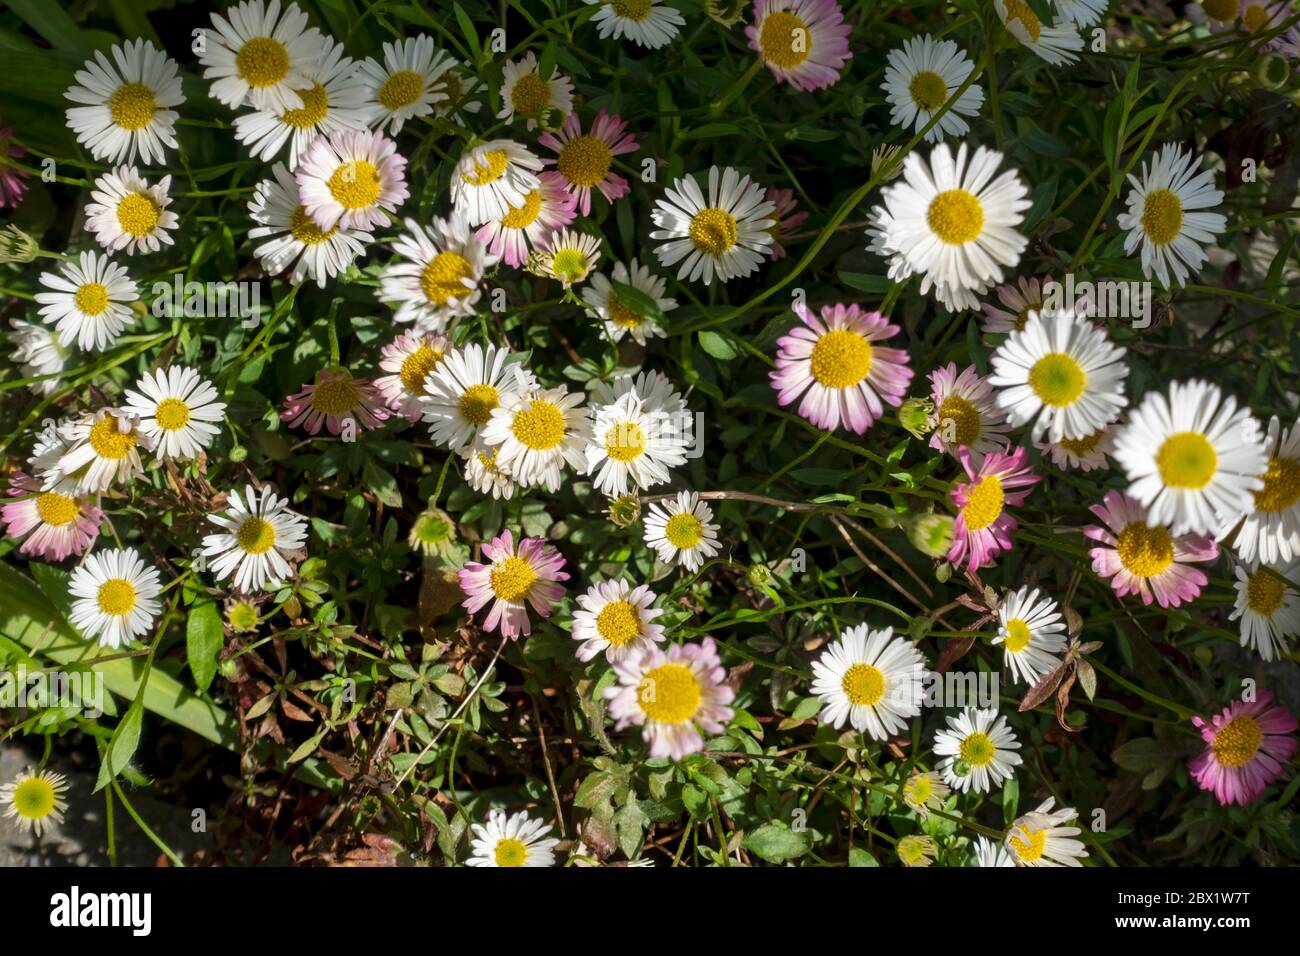 Nahaufnahme von erigeron karvinskianus Asteraceae Gänseblümchenähnliche Blumen von oben, die im Sommer im Garten wachsen England Vereinigtes Königreich GB Großbritannien Stockfoto